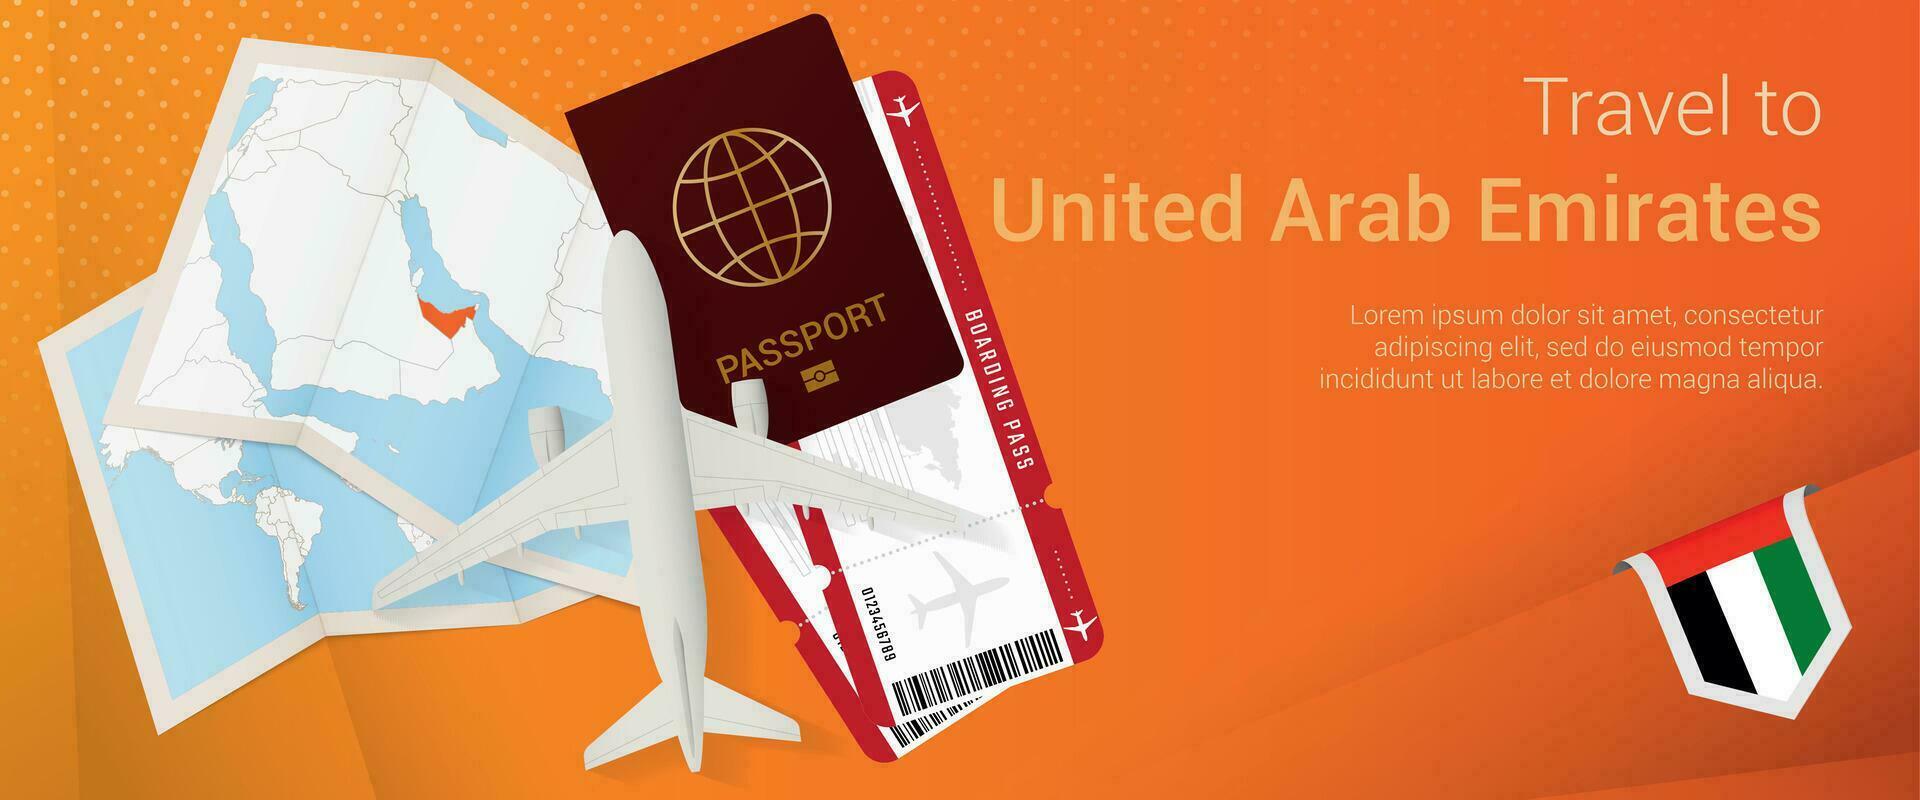 resa till förenad arab emirates pop-under baner. resa baner med pass, biljetter, flygplan, ombordstigning passera, Karta och flagga av förenad arab emiraten. vektor